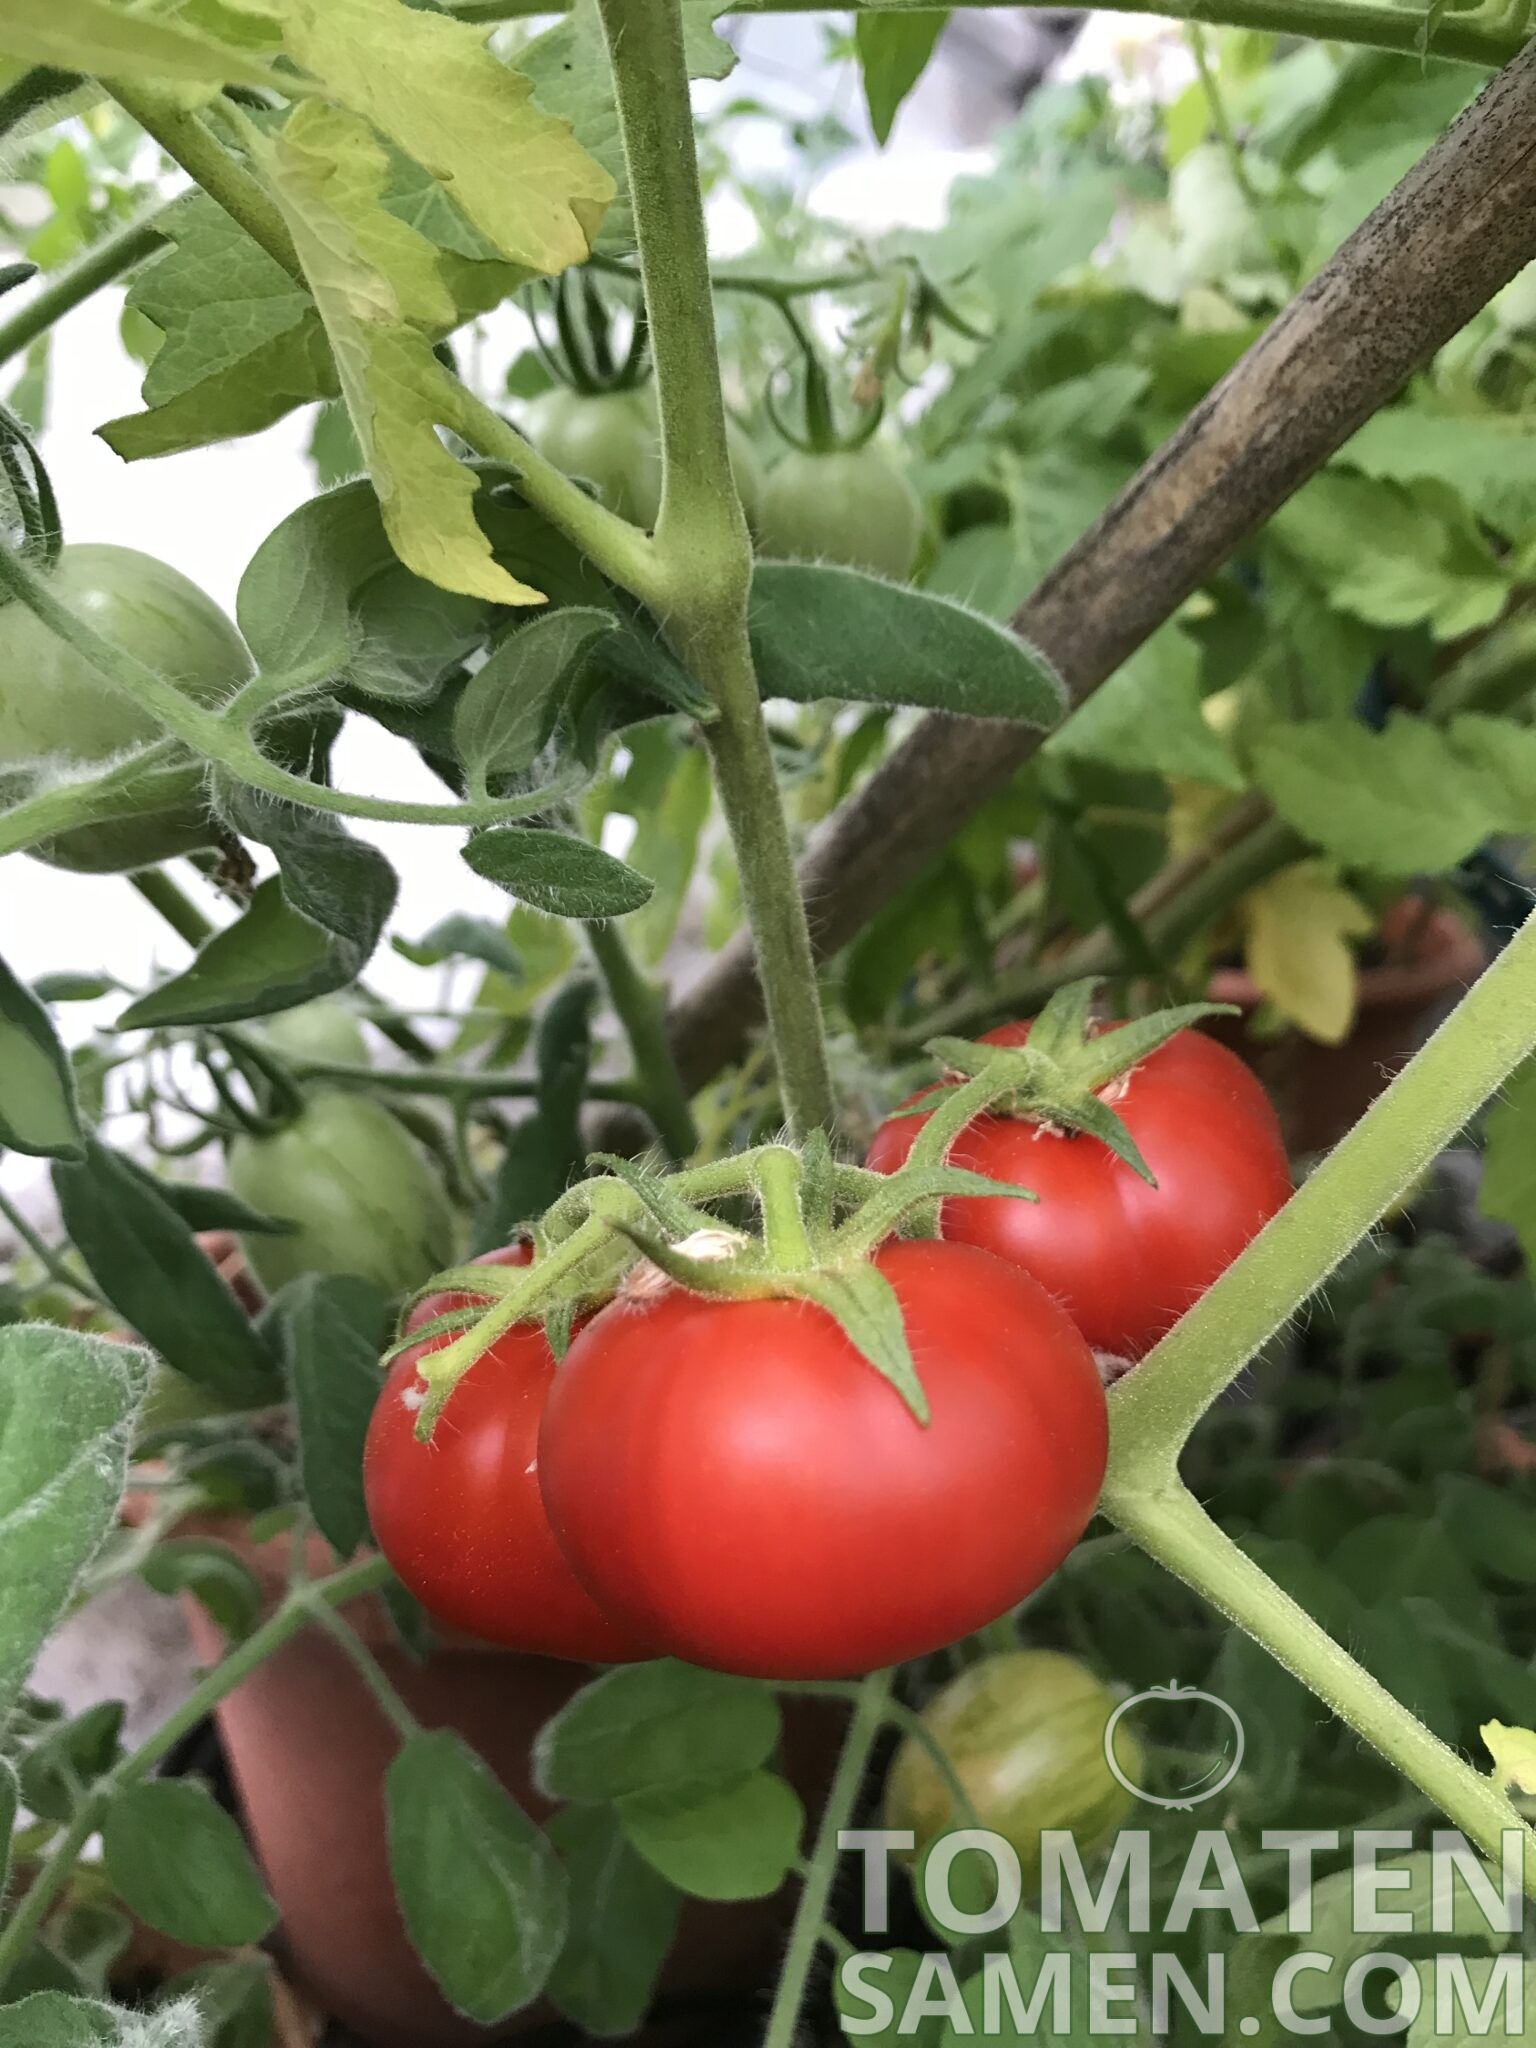 Rotkäppchen 10 Tomaten Samen neue Ernte 2019 aus bio Anbau Nr.11 